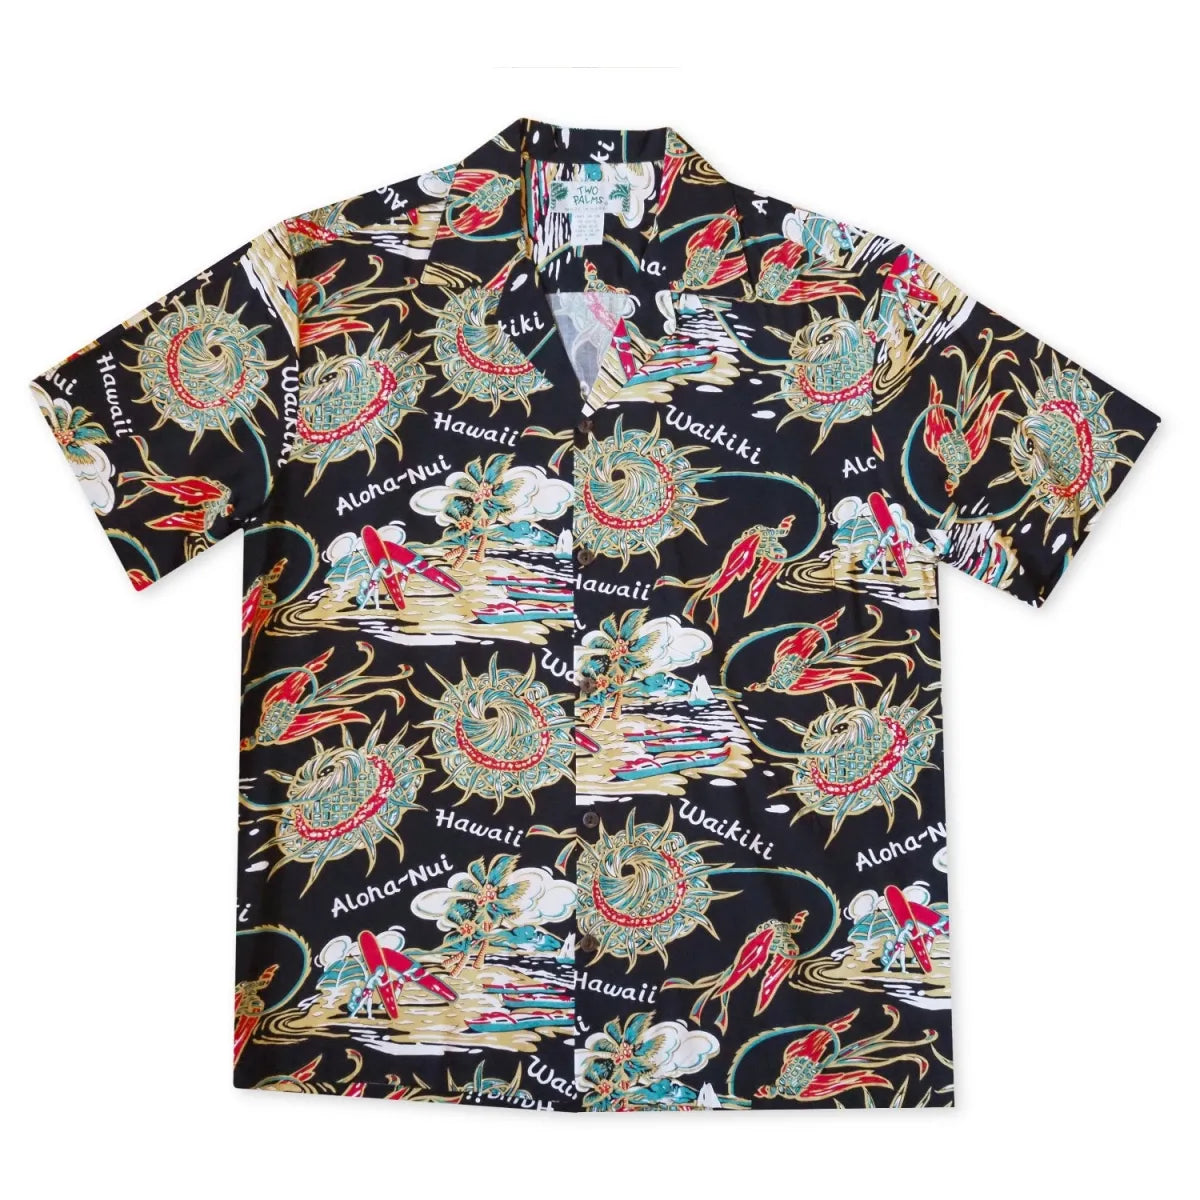 Waikiki wanderer black hawaiian rayon shirt